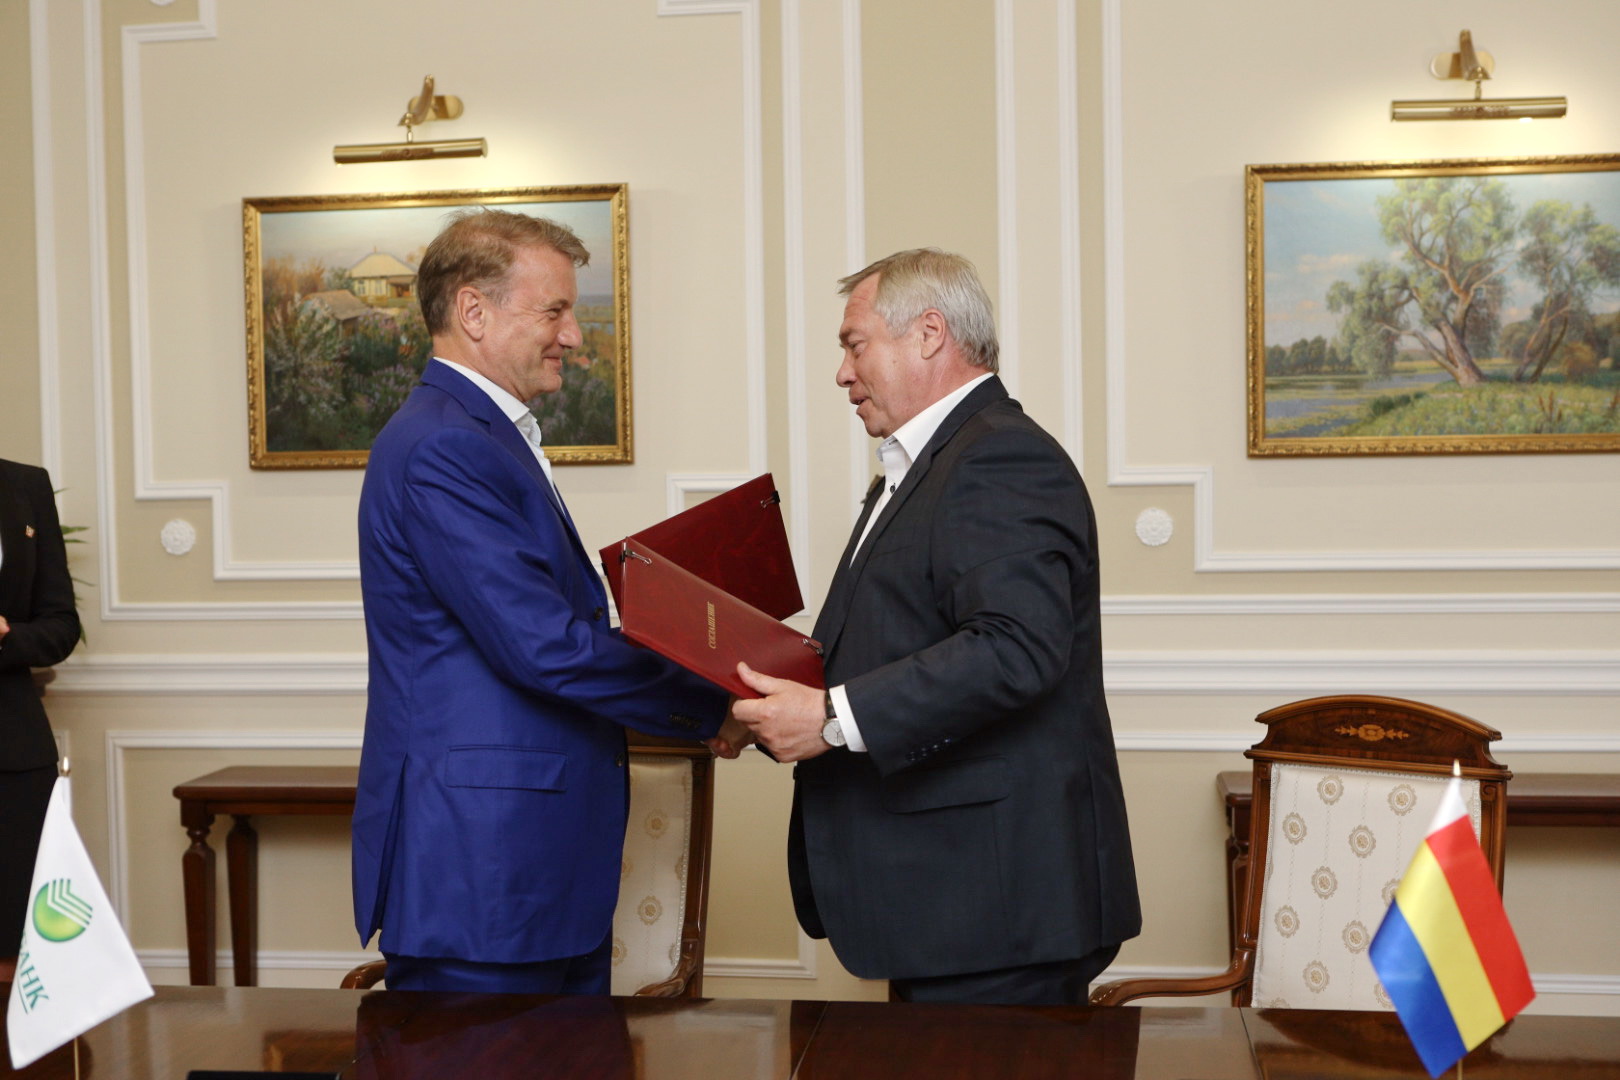 Сбербанк заключил соглашение о развитии цифровых технологий в Ростовской области